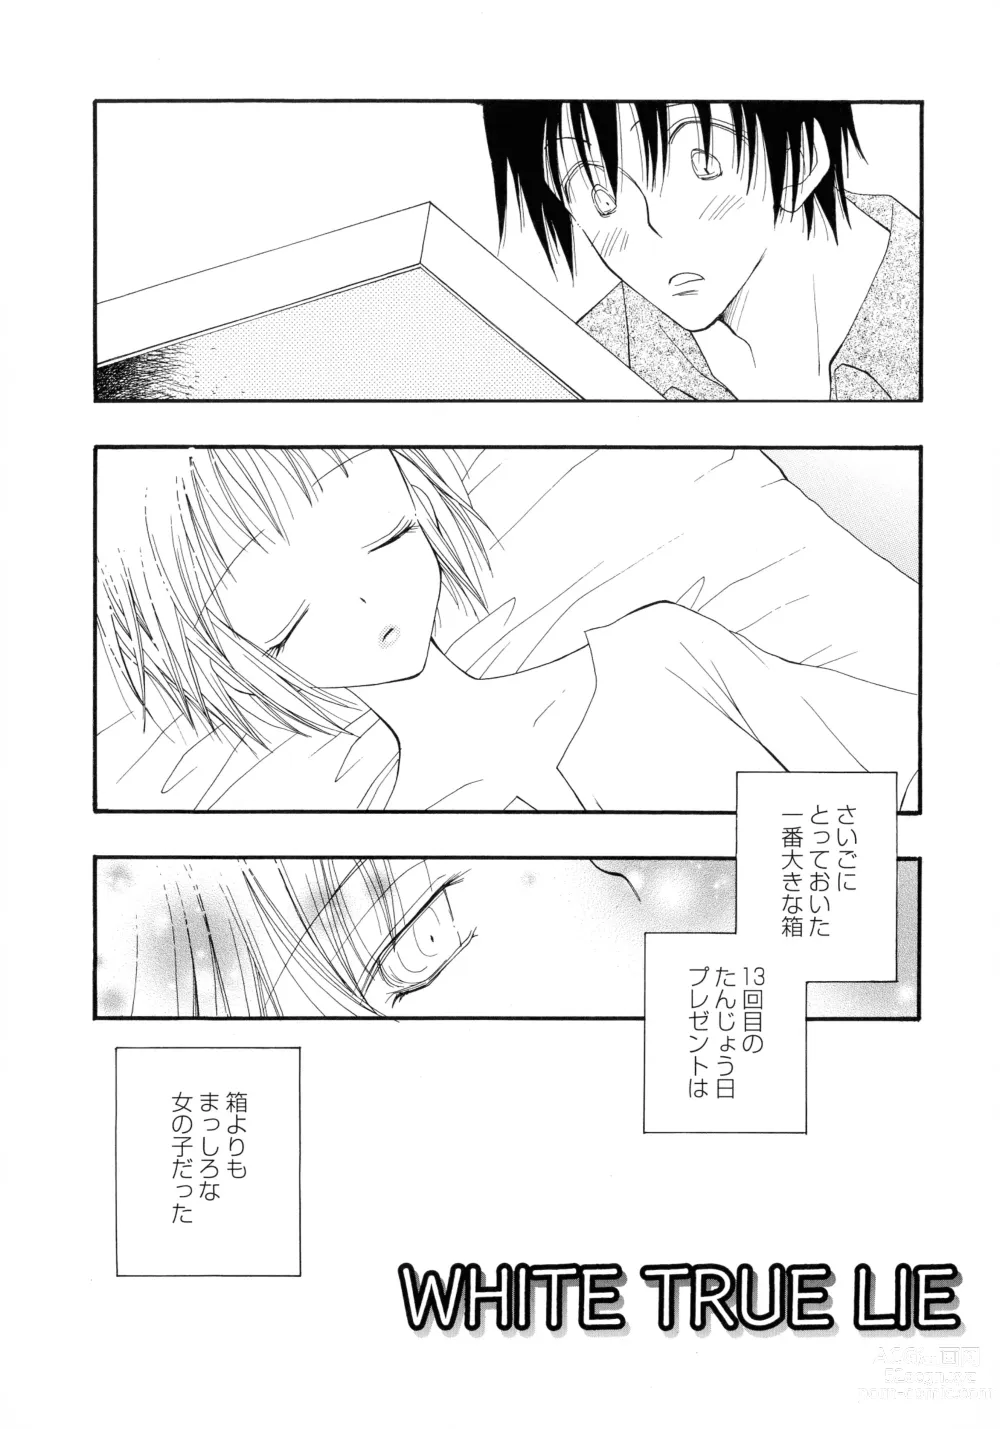 Page 187 of manga Cherry♥Pai Shinsouban